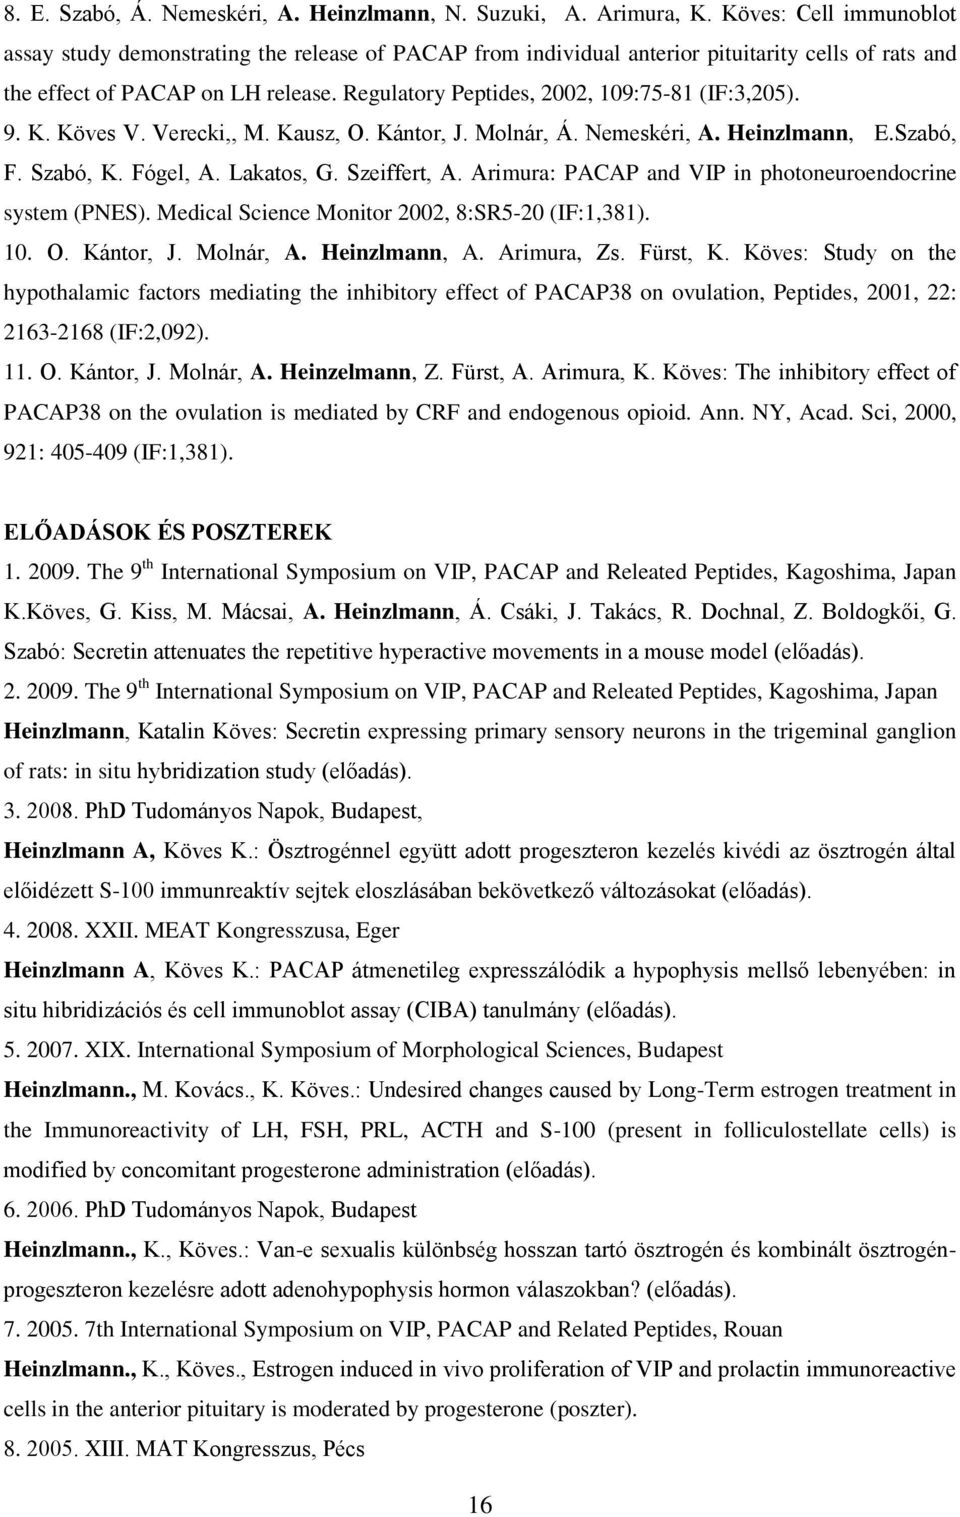 Regulatory Peptides, 2002, 109:75-81 (IF:3,205). 9. K. Köves V. Verecki,, M. Kausz, O. Kántor, J. Molnár, Á. Nemeskéri, A. Heinzlmann, E.Szabó, F. Szabó, K. Fógel, A. Lakatos, G. Szeiffert, A.